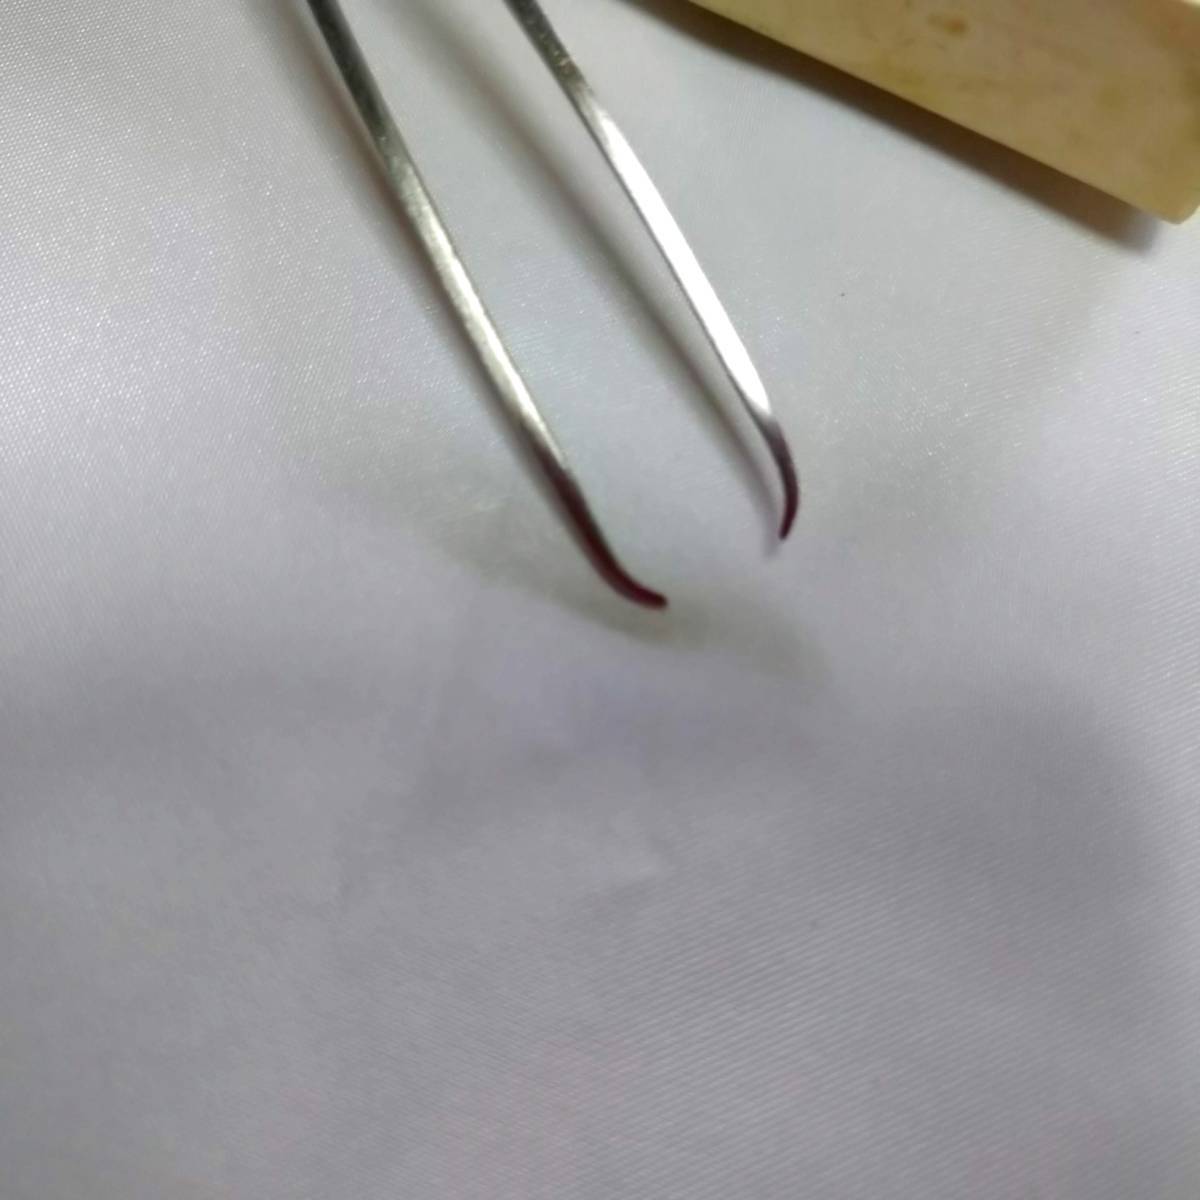  неиспользуемый 　 хранение товара 　 сделано в Японии 　 нержавеющая сталь  пр-во  　... волос ...　 волос ...　 и ...　 общая длина   около ７５㎜　... ширина  около １㎜　１９ шт.   комплект  